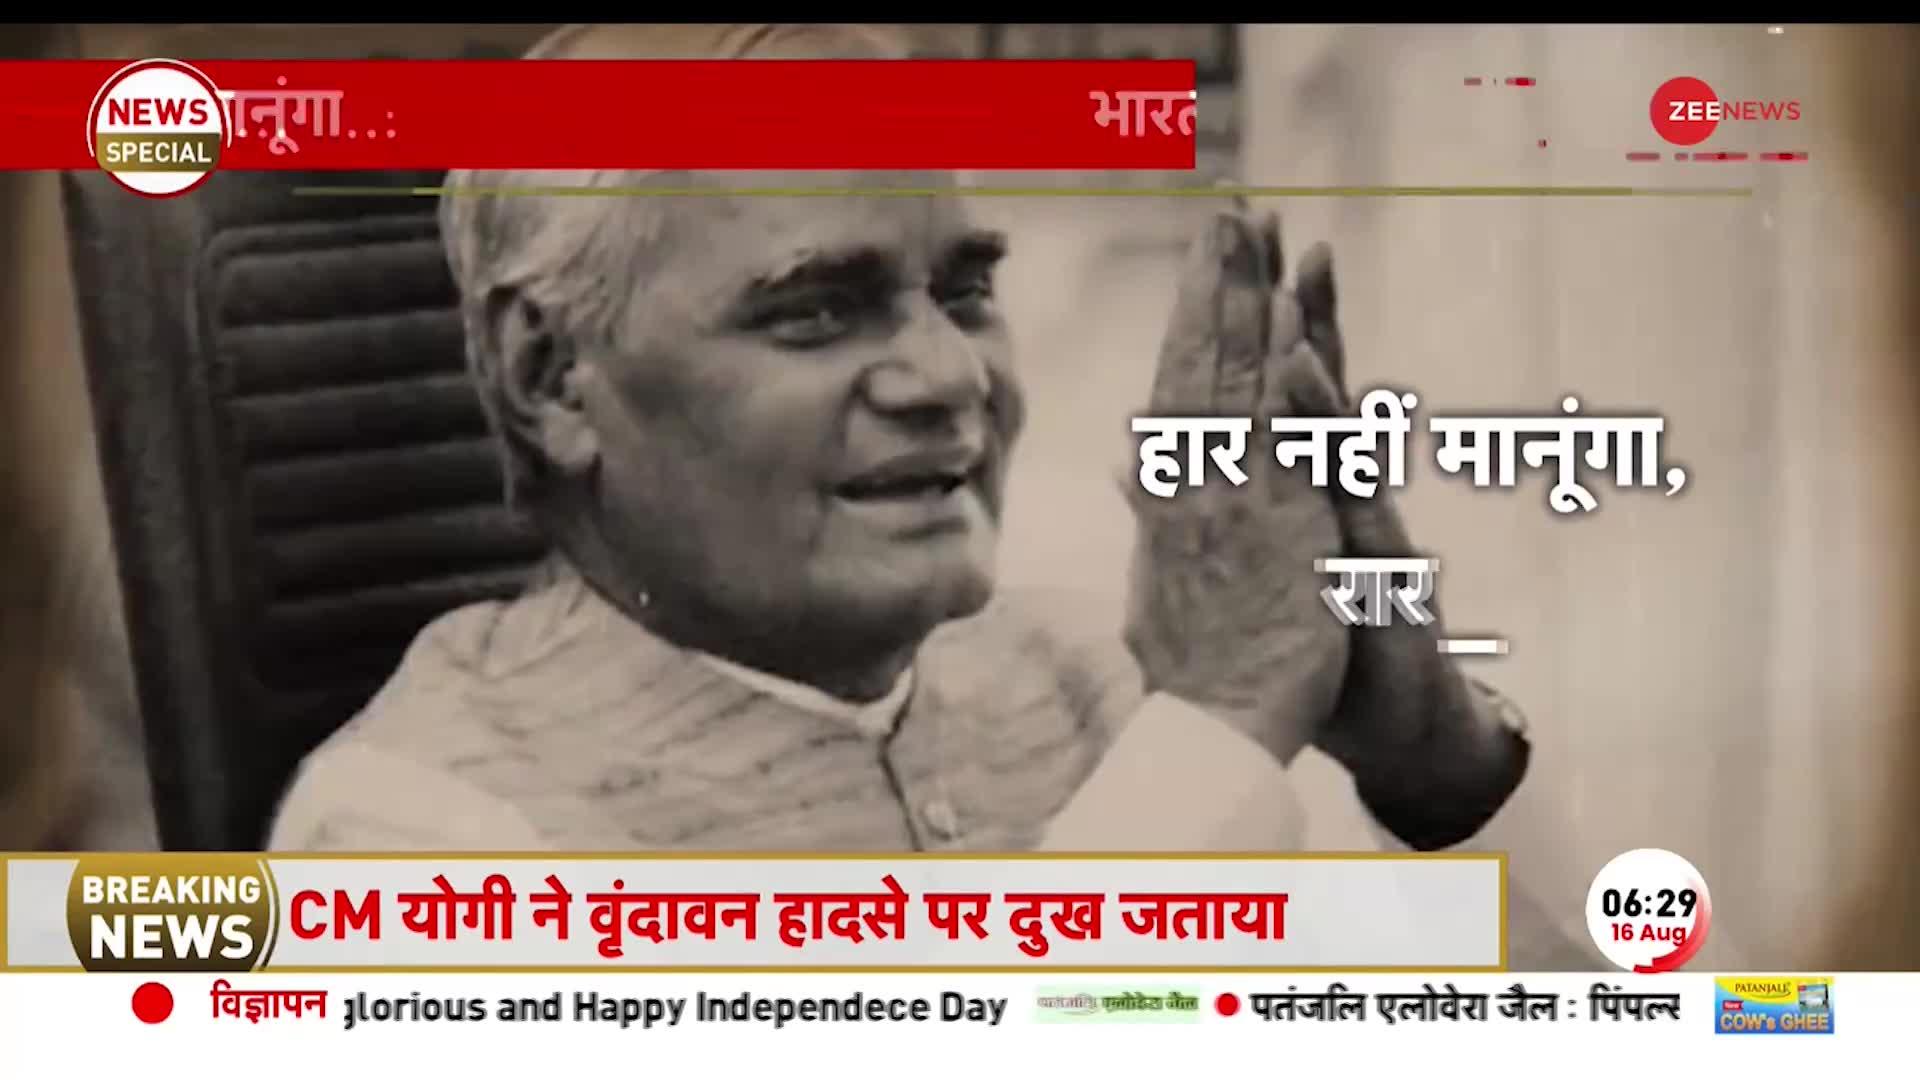 Atal Bihari Vajpayee Speech: जब अटल जी ने चंद मिनटों में छुड़ा दिए थे पाकिस्तान के पसीने!